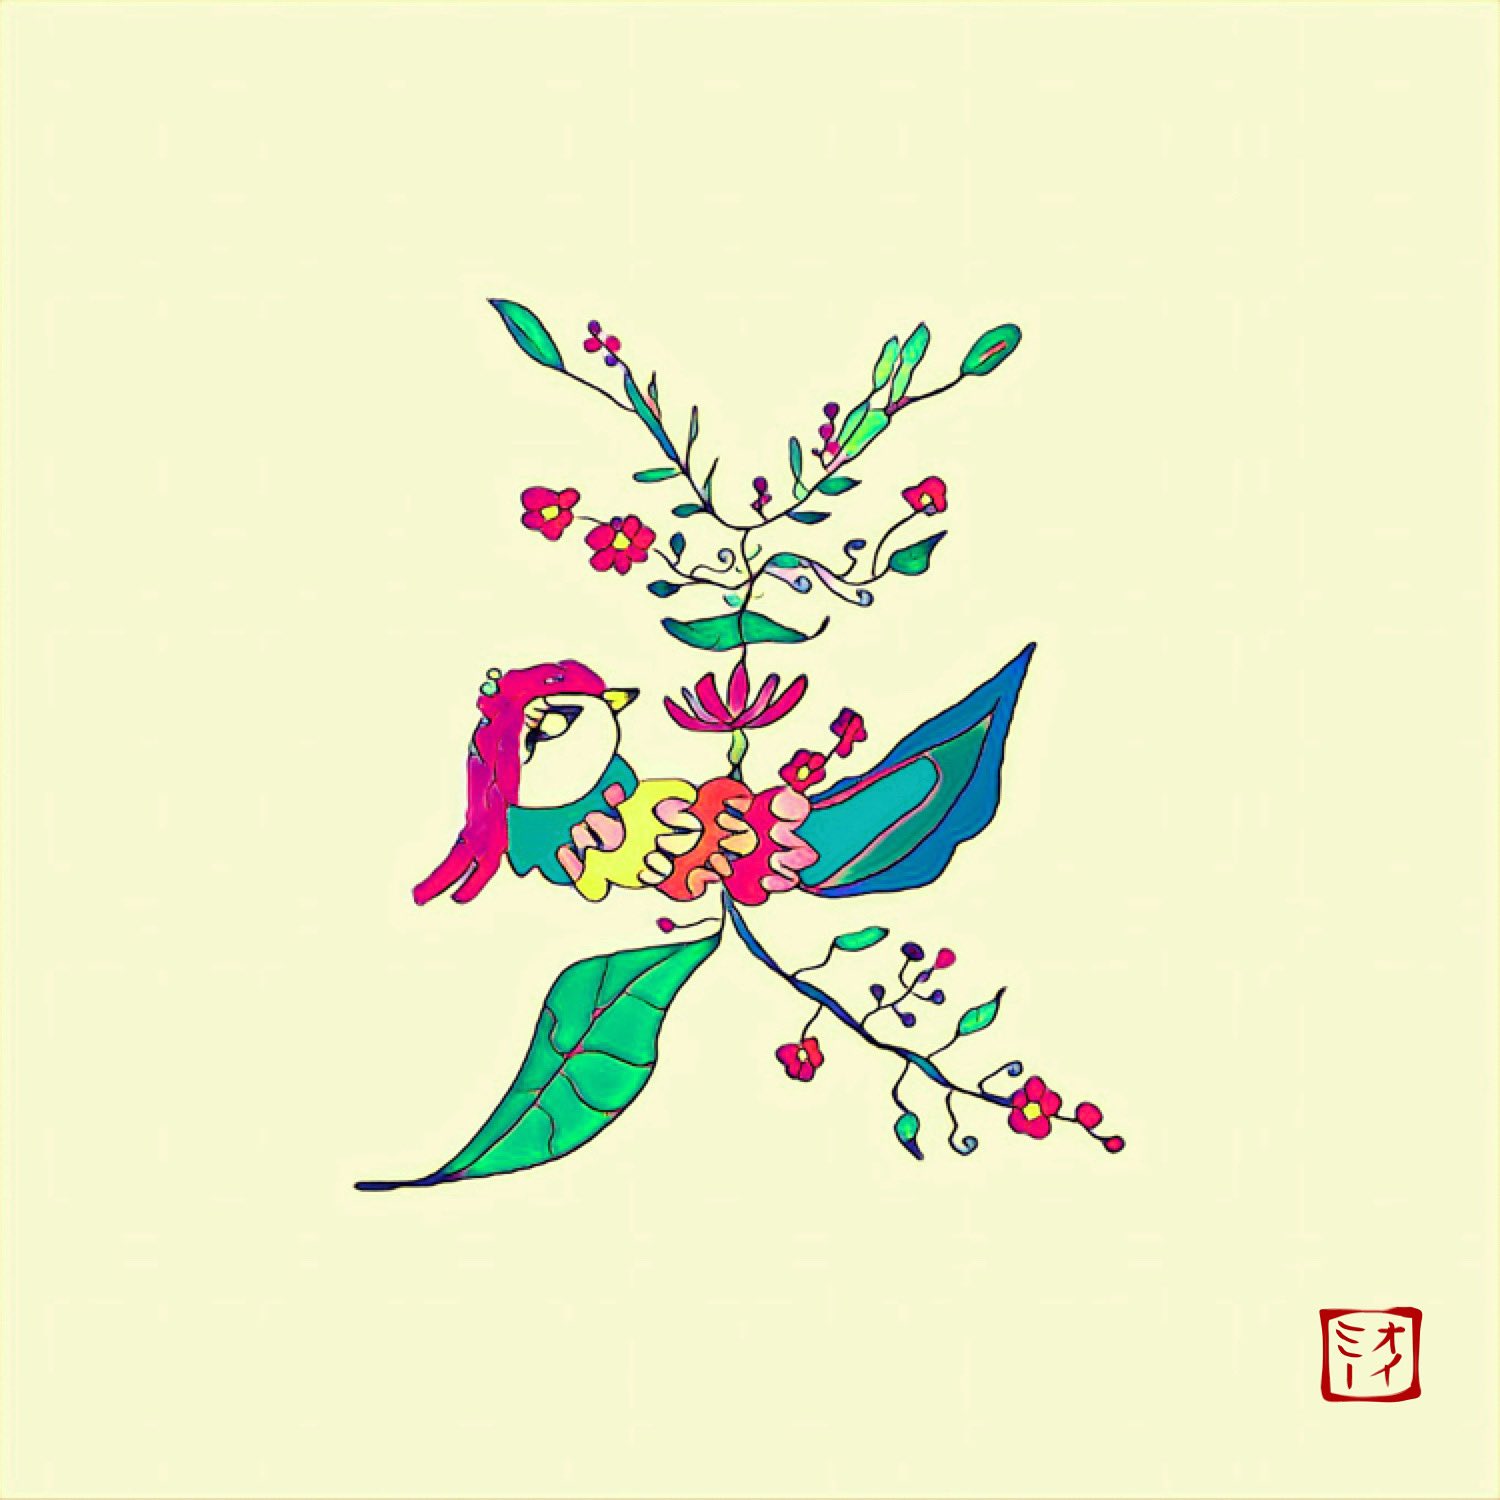 Oimy オイミー 美 を美しく咲く花と鳥で表現しました 絵 絵が好きな人と繋がりたい イラスト イラストレーター 絵画 アート 色の力 カラフルなイラスト ポップなイラスト 派手なイラスト 空想 空想画 メルヘン メルヘンアート 謎な絵